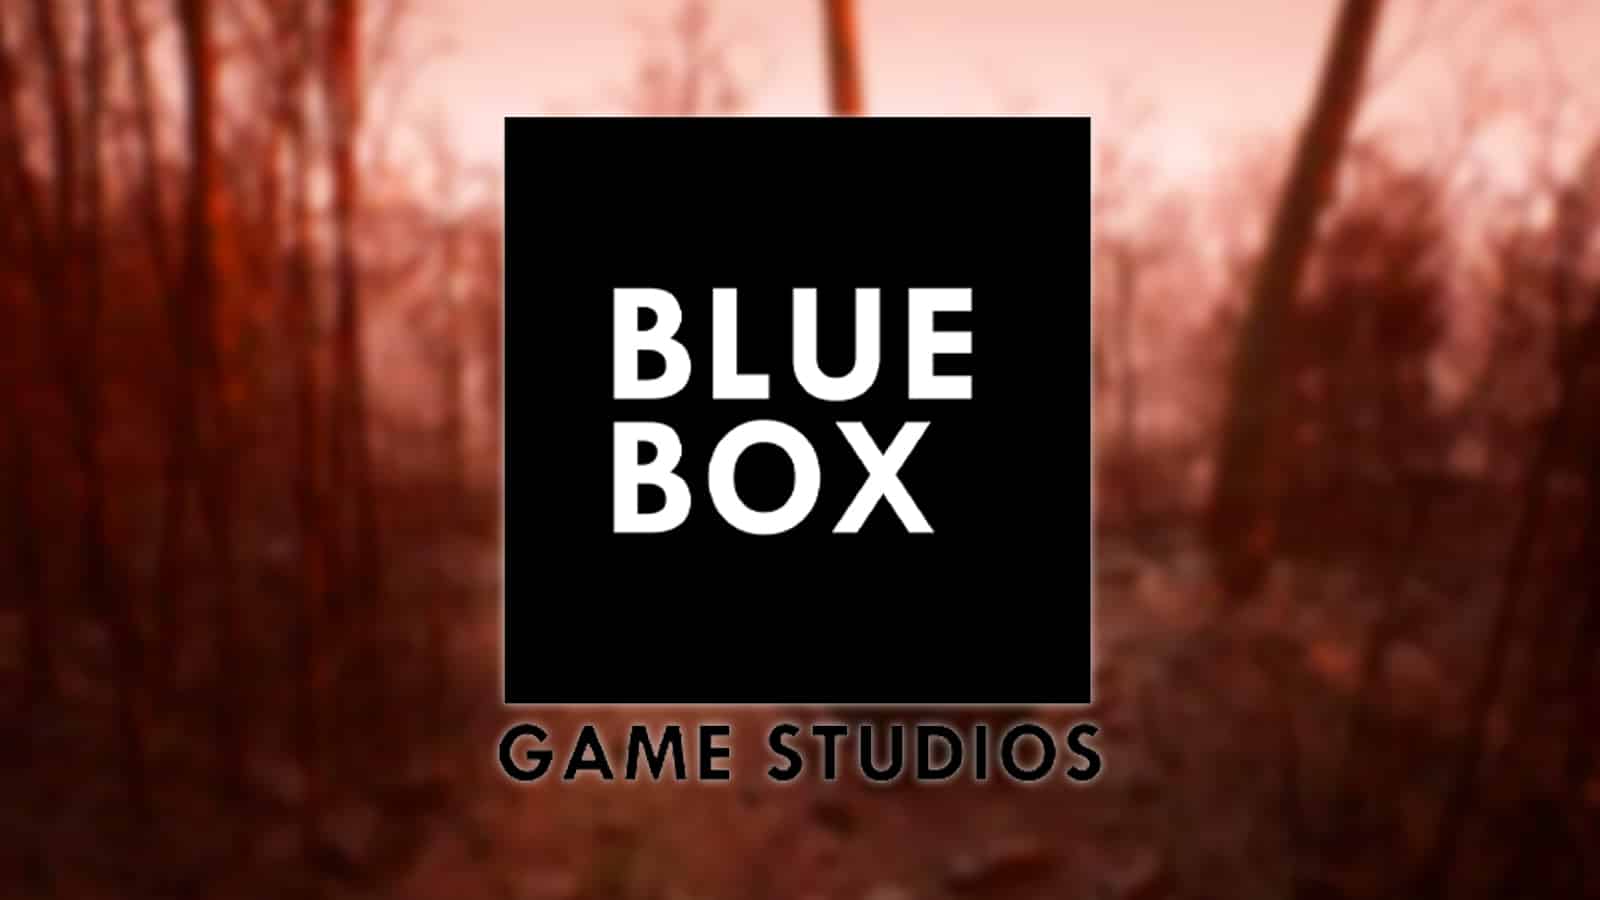 Blue Box recibe amenazas de muerte debido a su proyecto Abandoned